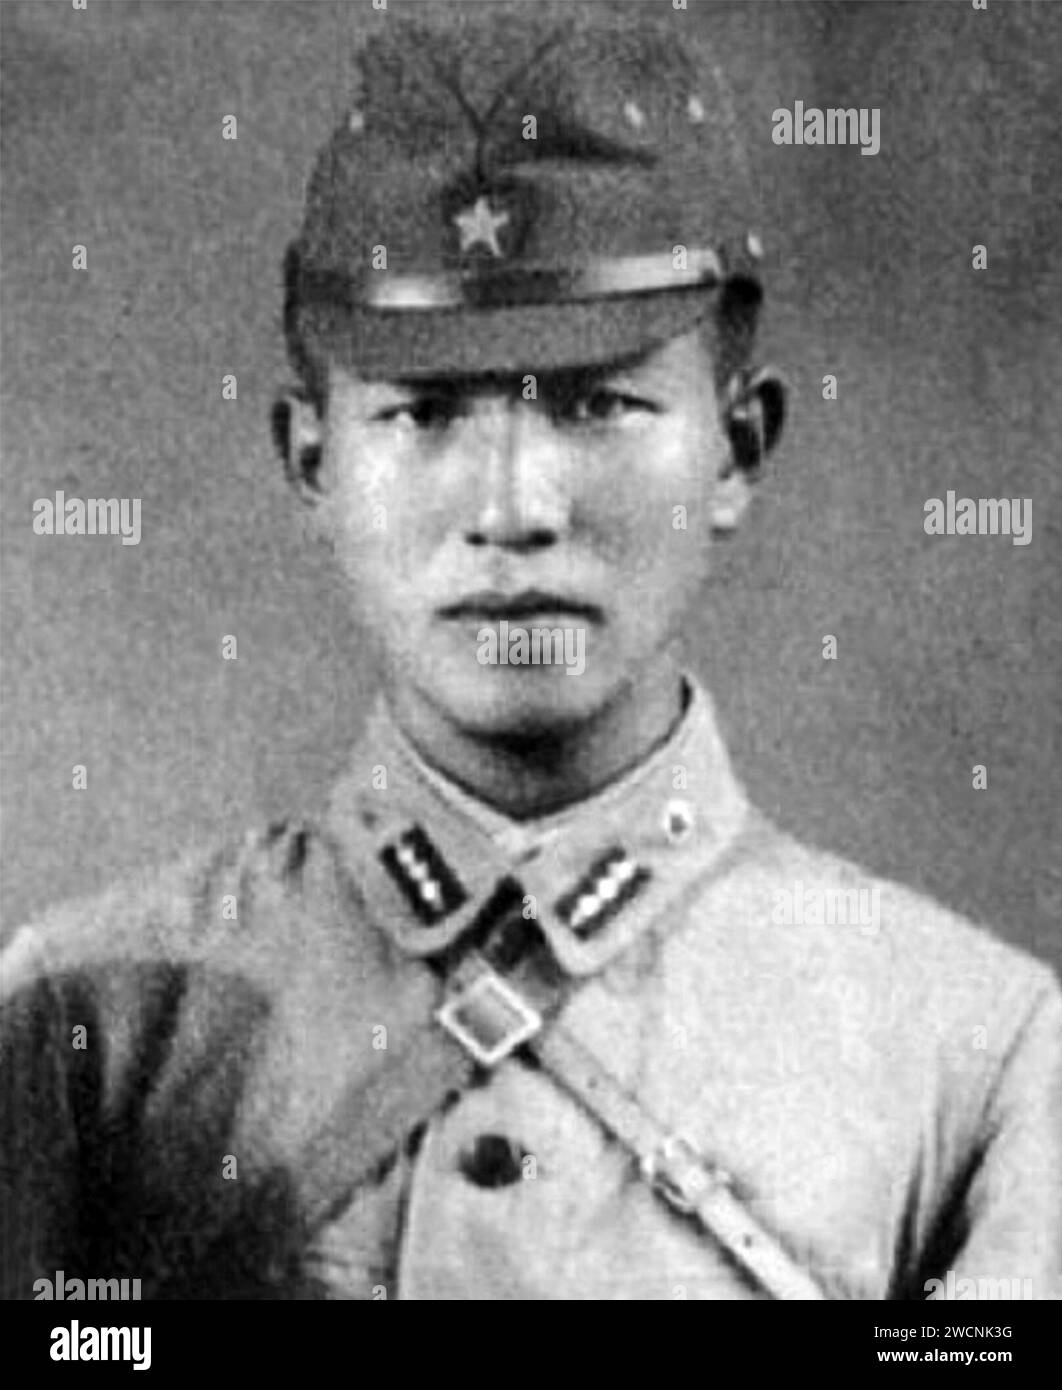 Hiroo Onoda, Hiroo Onoda (1922-2014), c. 1944. Hiroo Onoda (1922 – 2014) officier du renseignement de l'armée impériale japonaise qui a combattu pendant la Seconde Guerre mondiale et ne s'est pas rendu à la fin de la guerre en août 1945, passant 29 ans à se cacher aux Philippines Banque D'Images